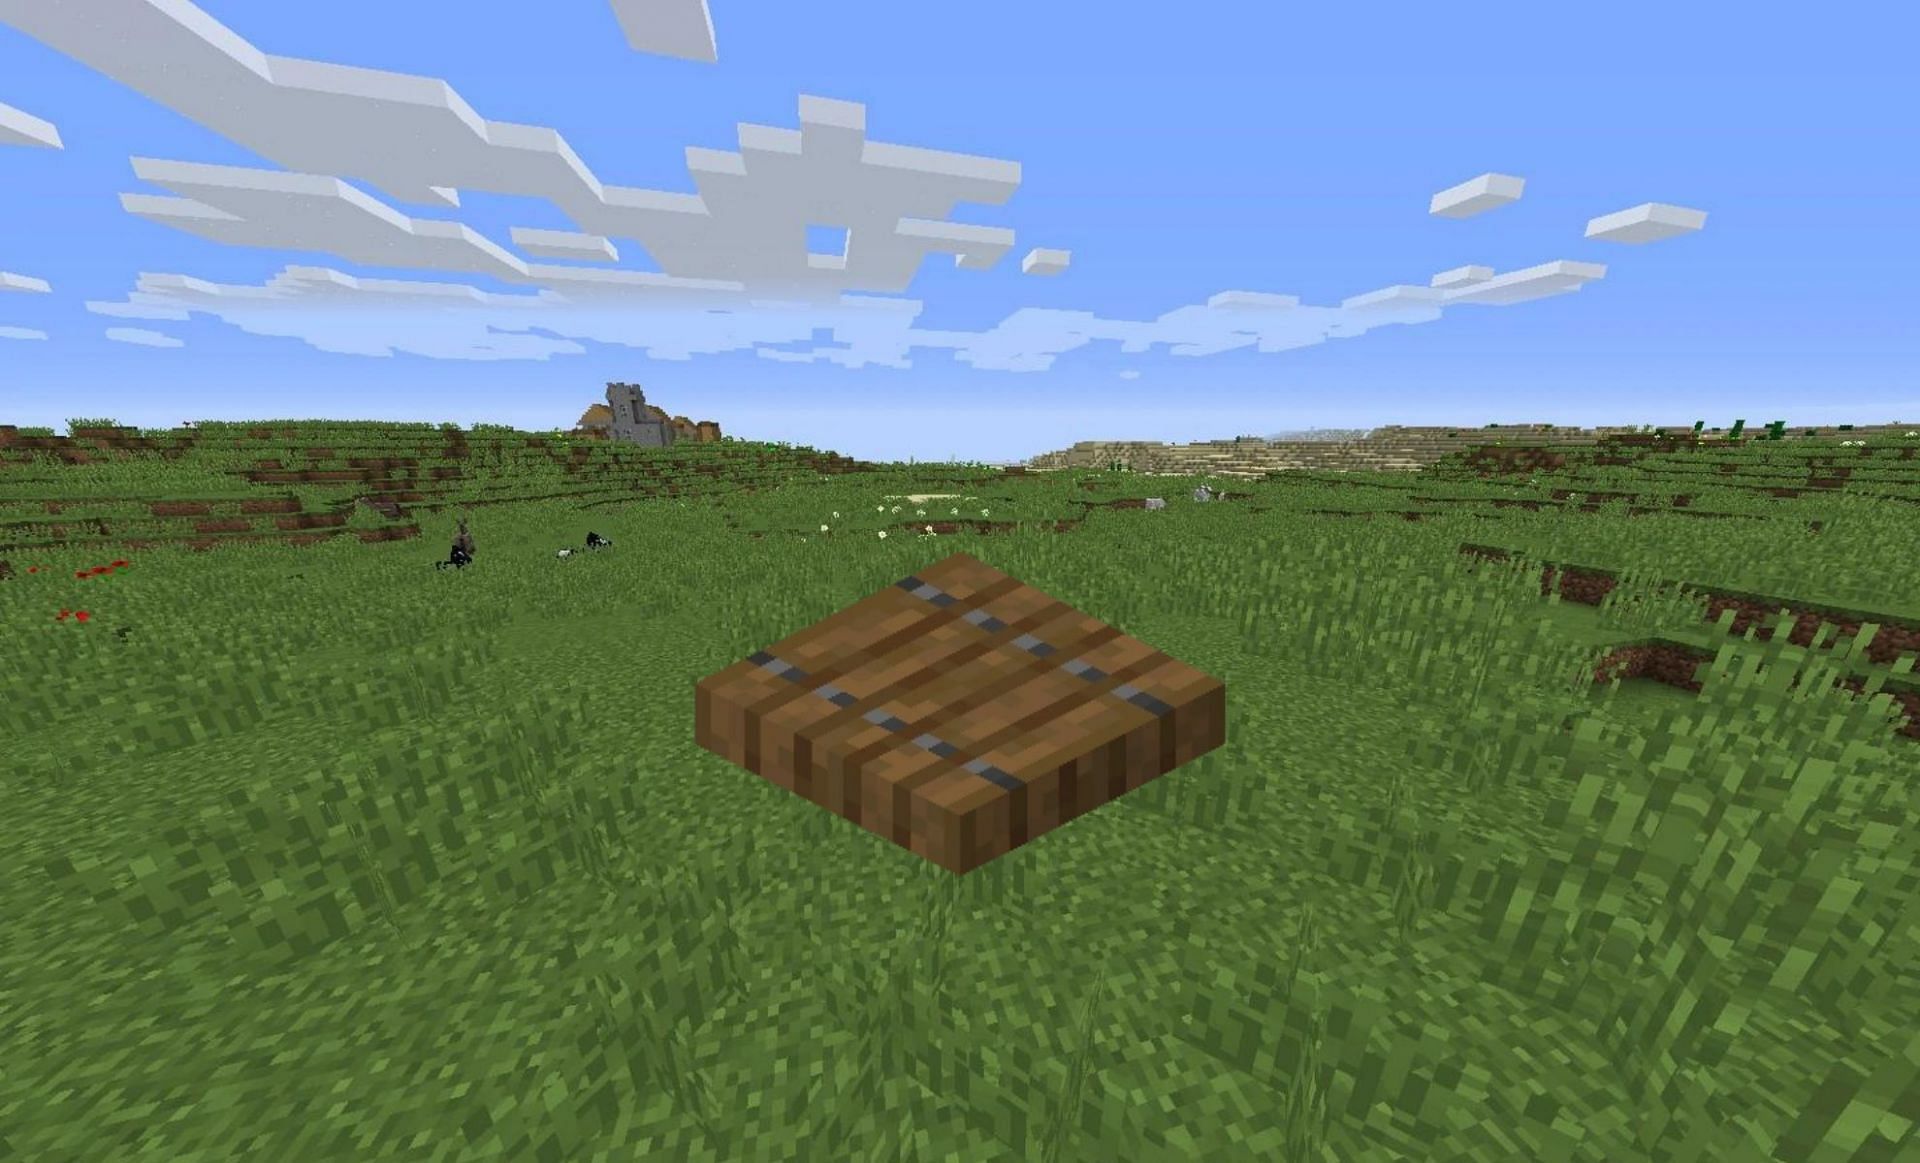 Spruce trapdoor (Image via Minecraft Wiki)